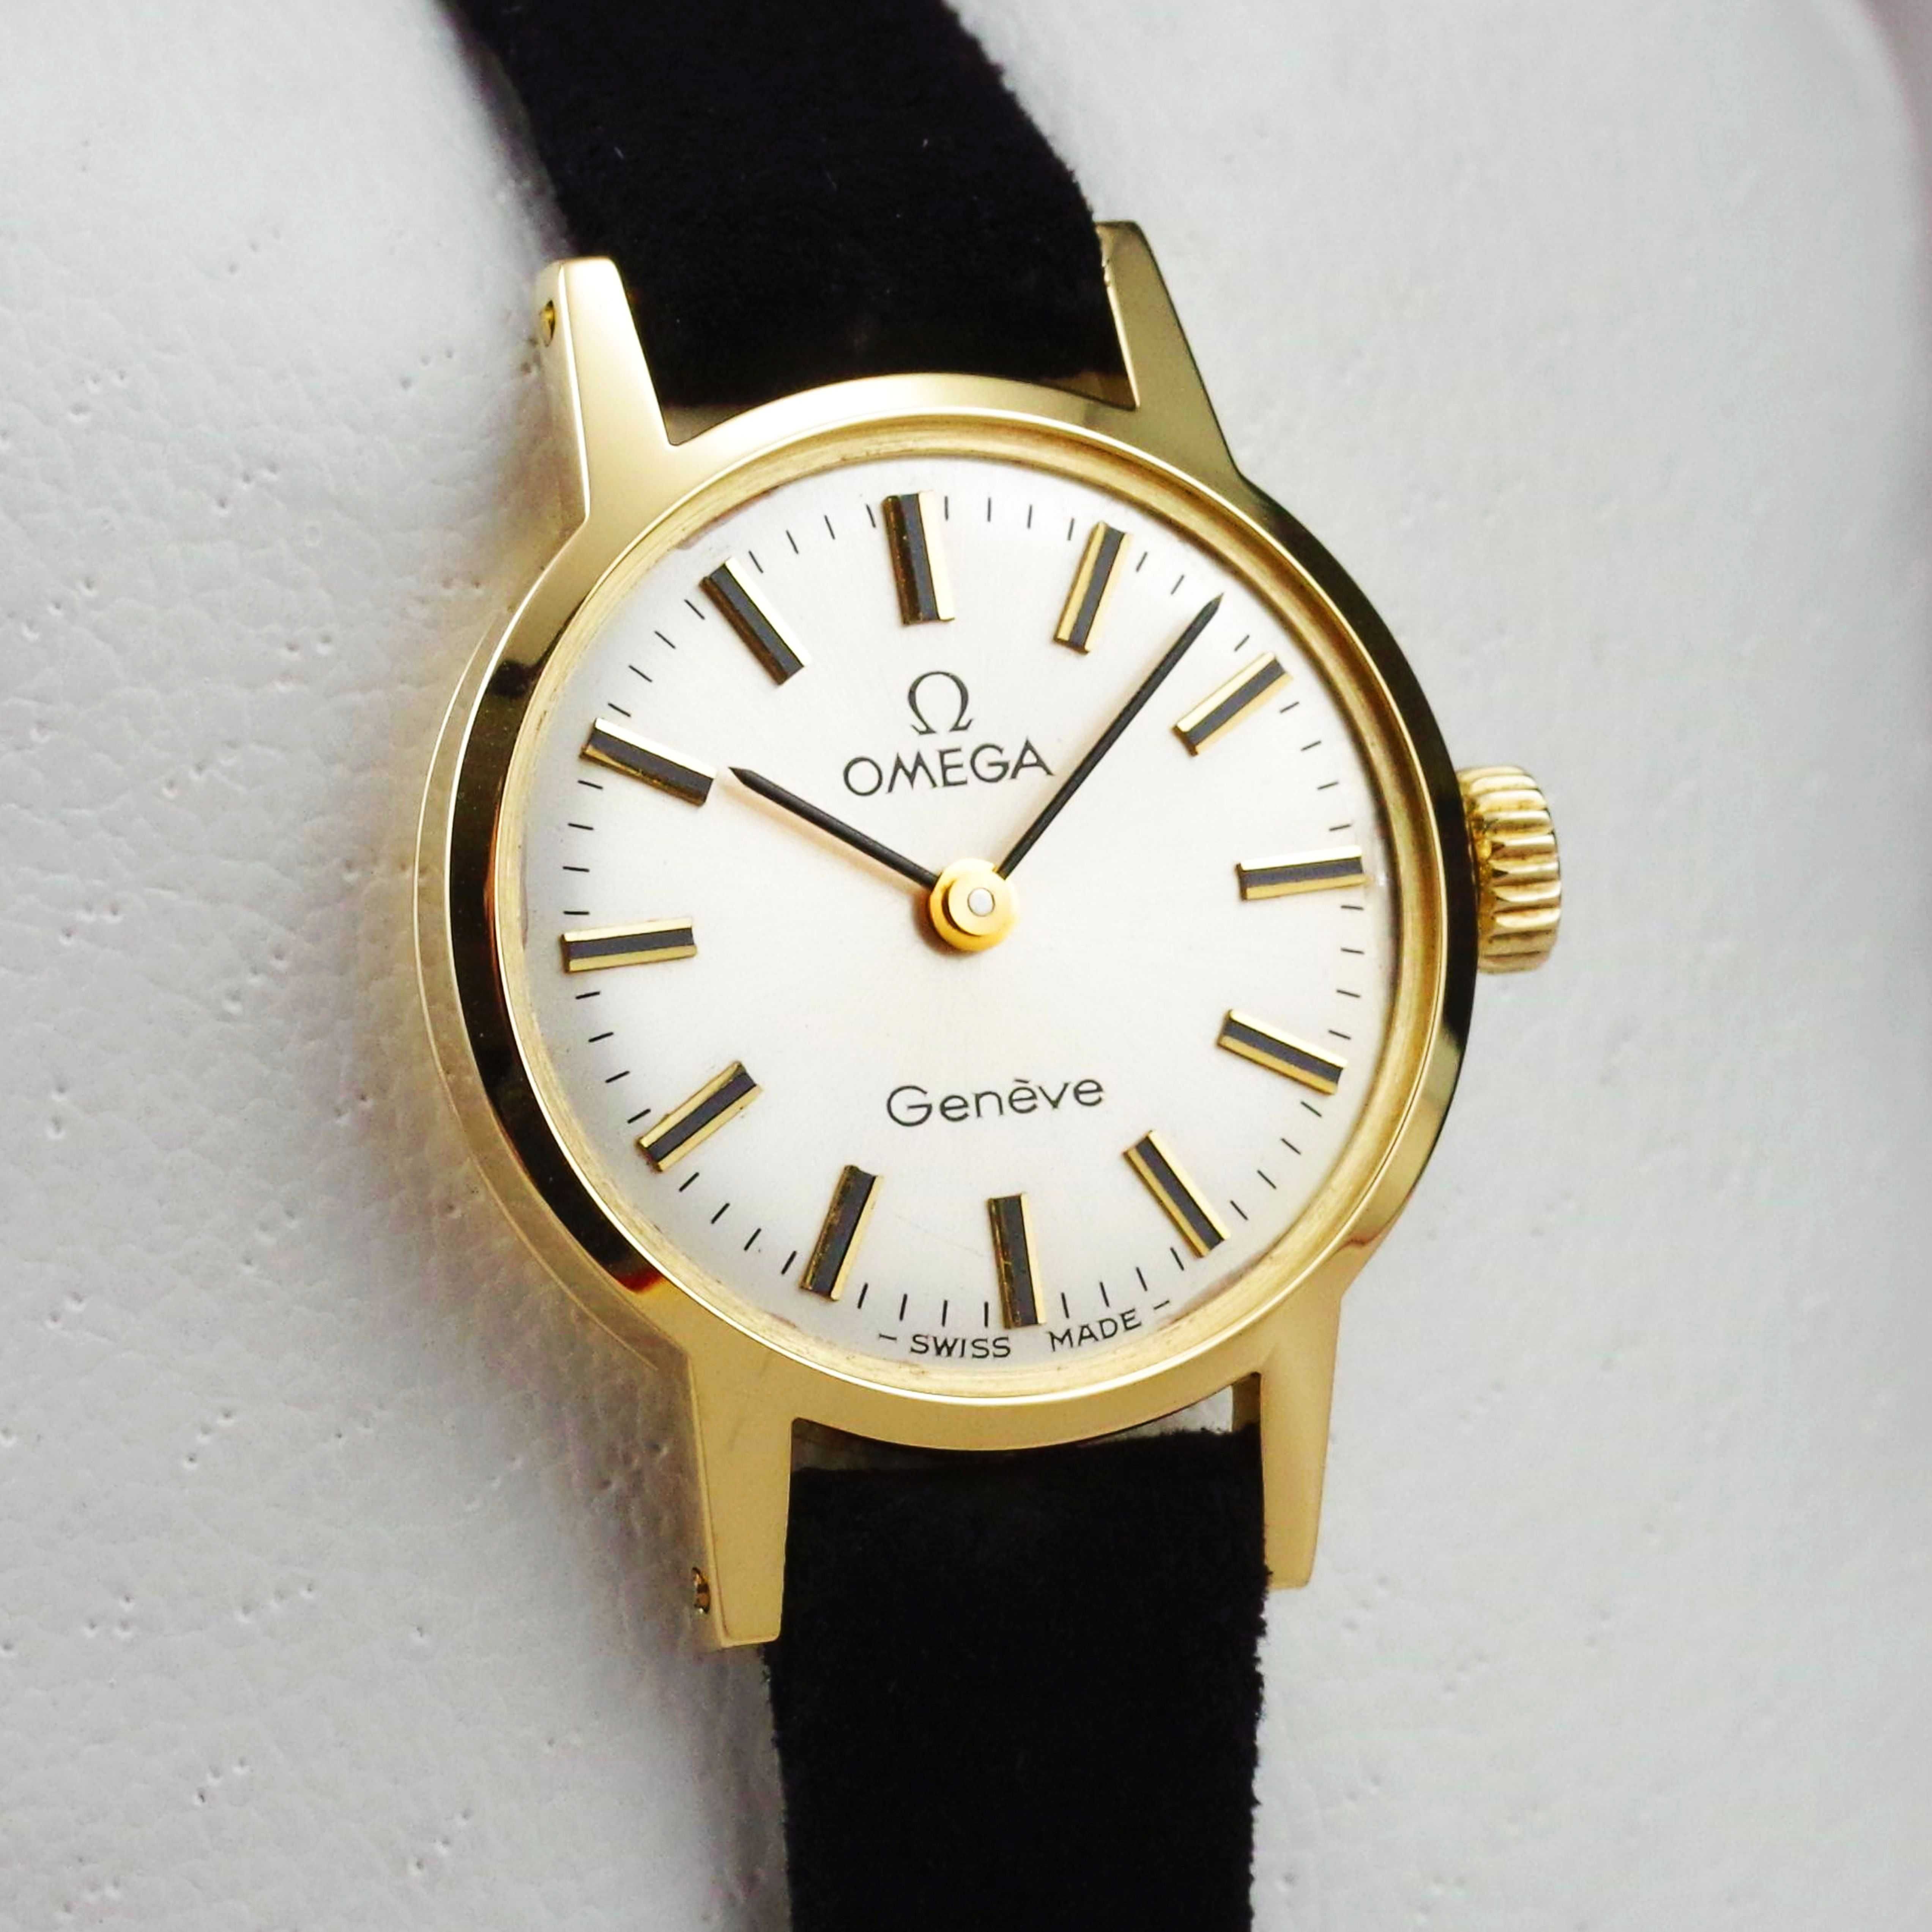 OMEGA zegarek damski VINTAGE 1972 kaliber 625 lite ZŁOTO 18K / 750